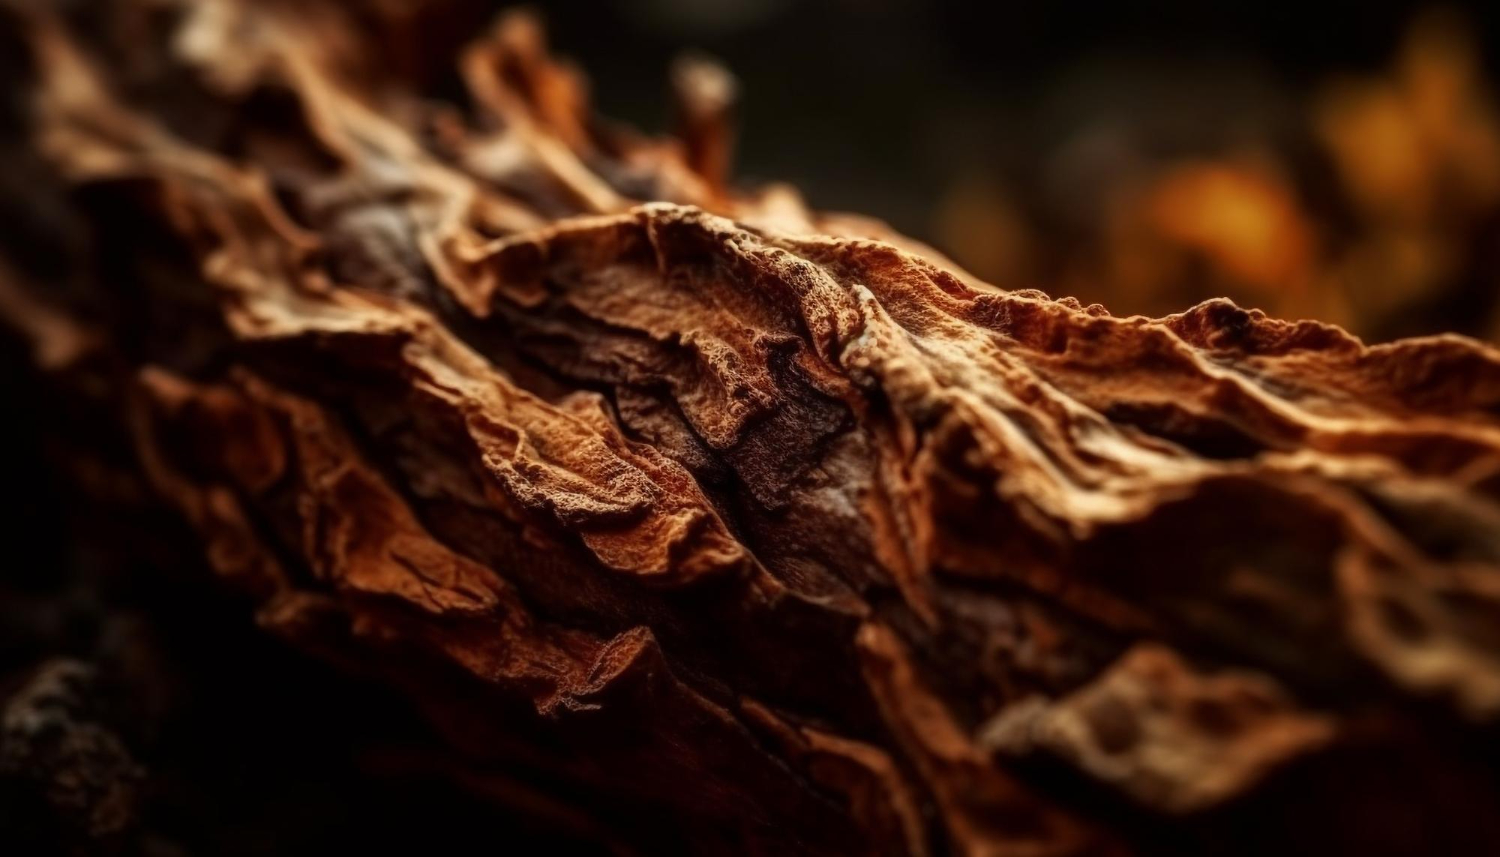 Agarwood - Its Remarkable Medicinal Benefits